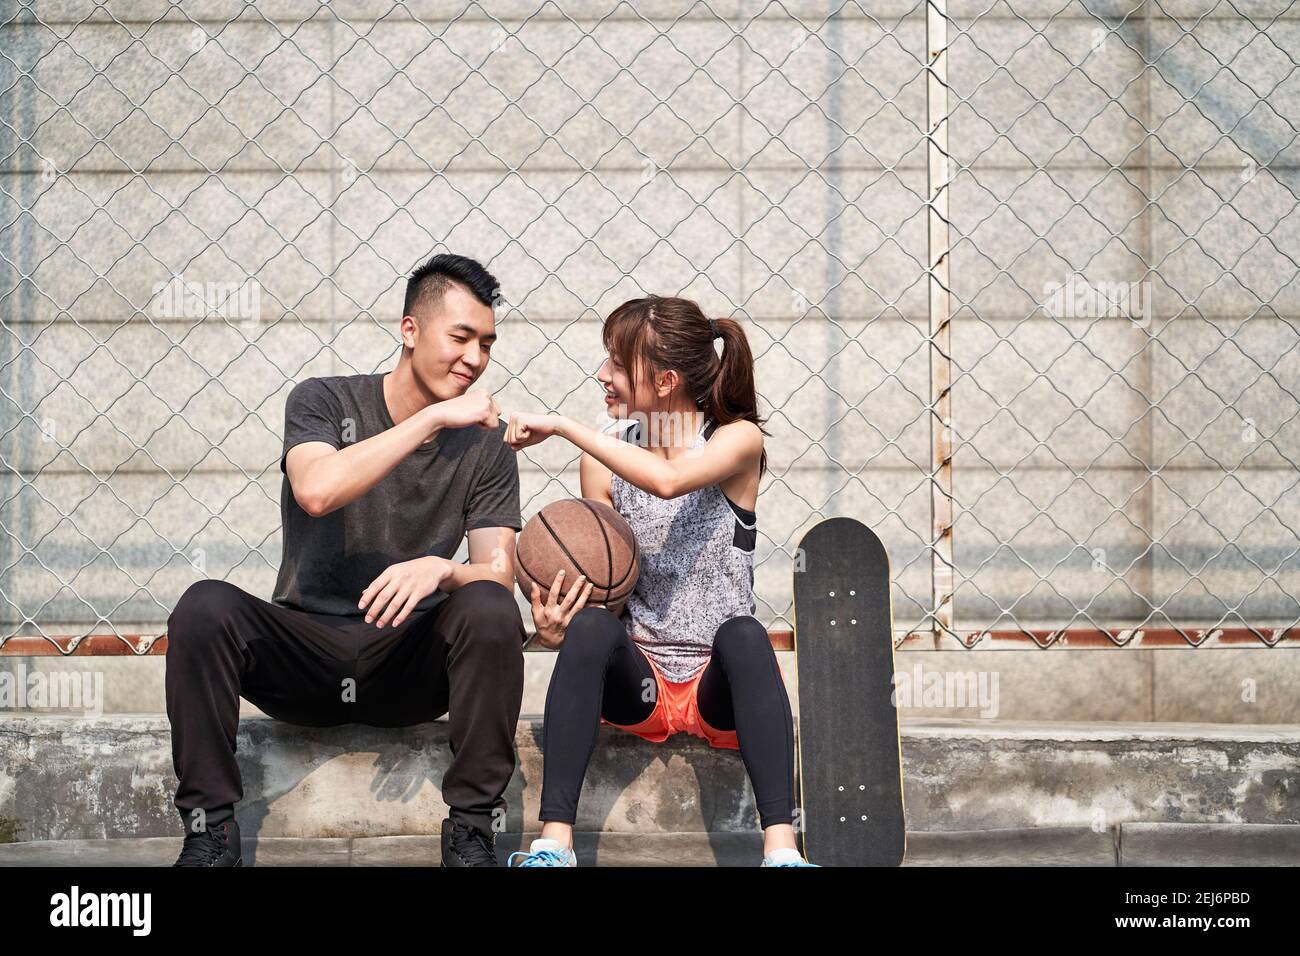 un jeune homme et une jeune femme asiatique adulte se cognent sur un terrain de basket-ball extérieur Banque D'Images